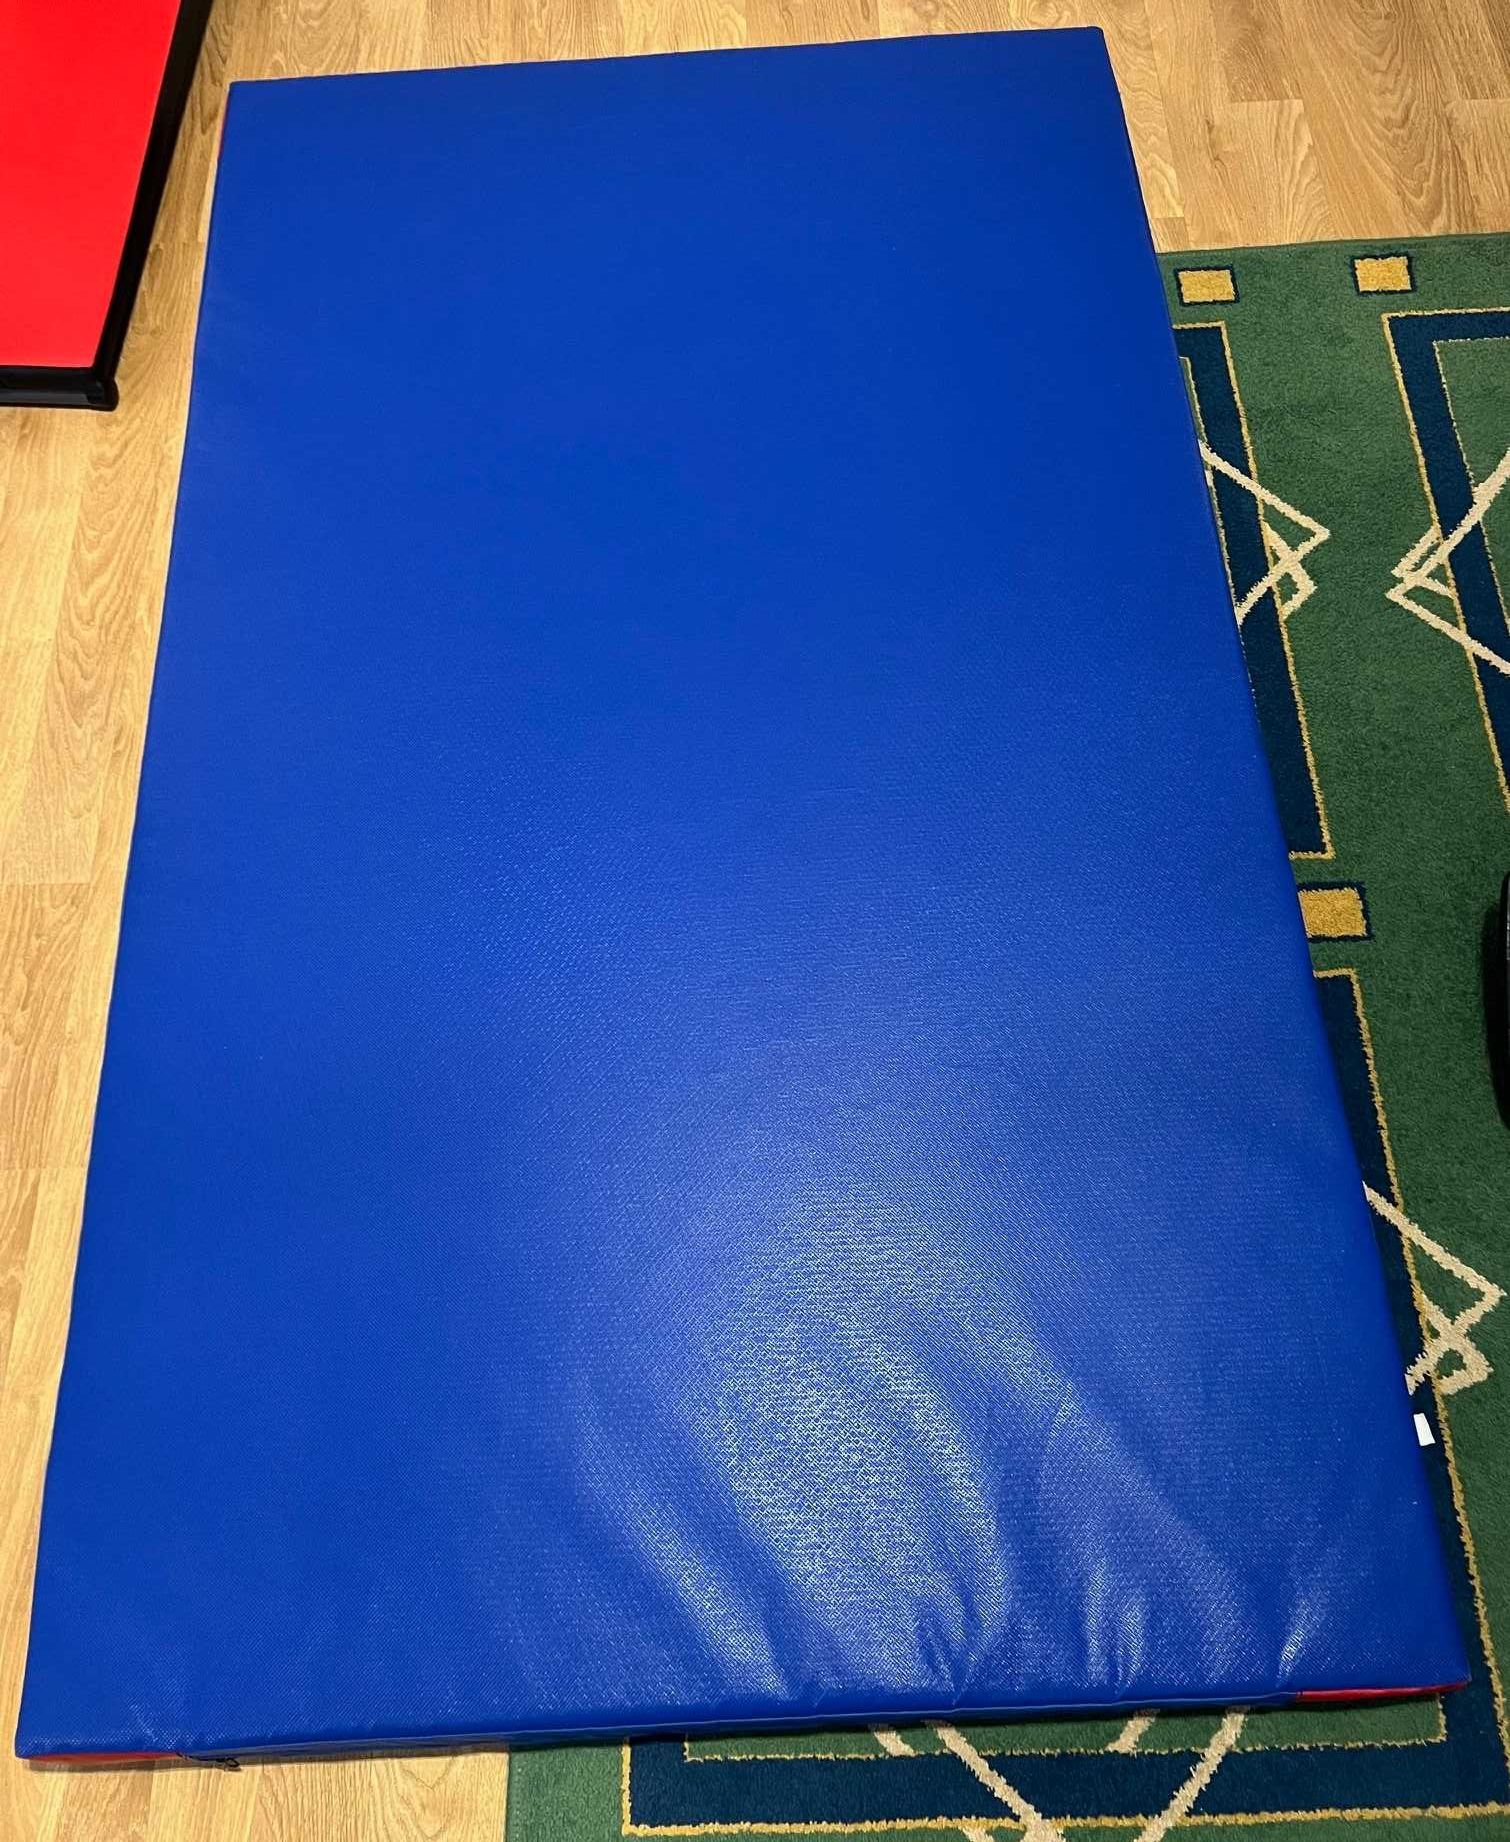 * Materac gimnastyczny 200x120x10 cm sportowy niebieski antypoślizgowy